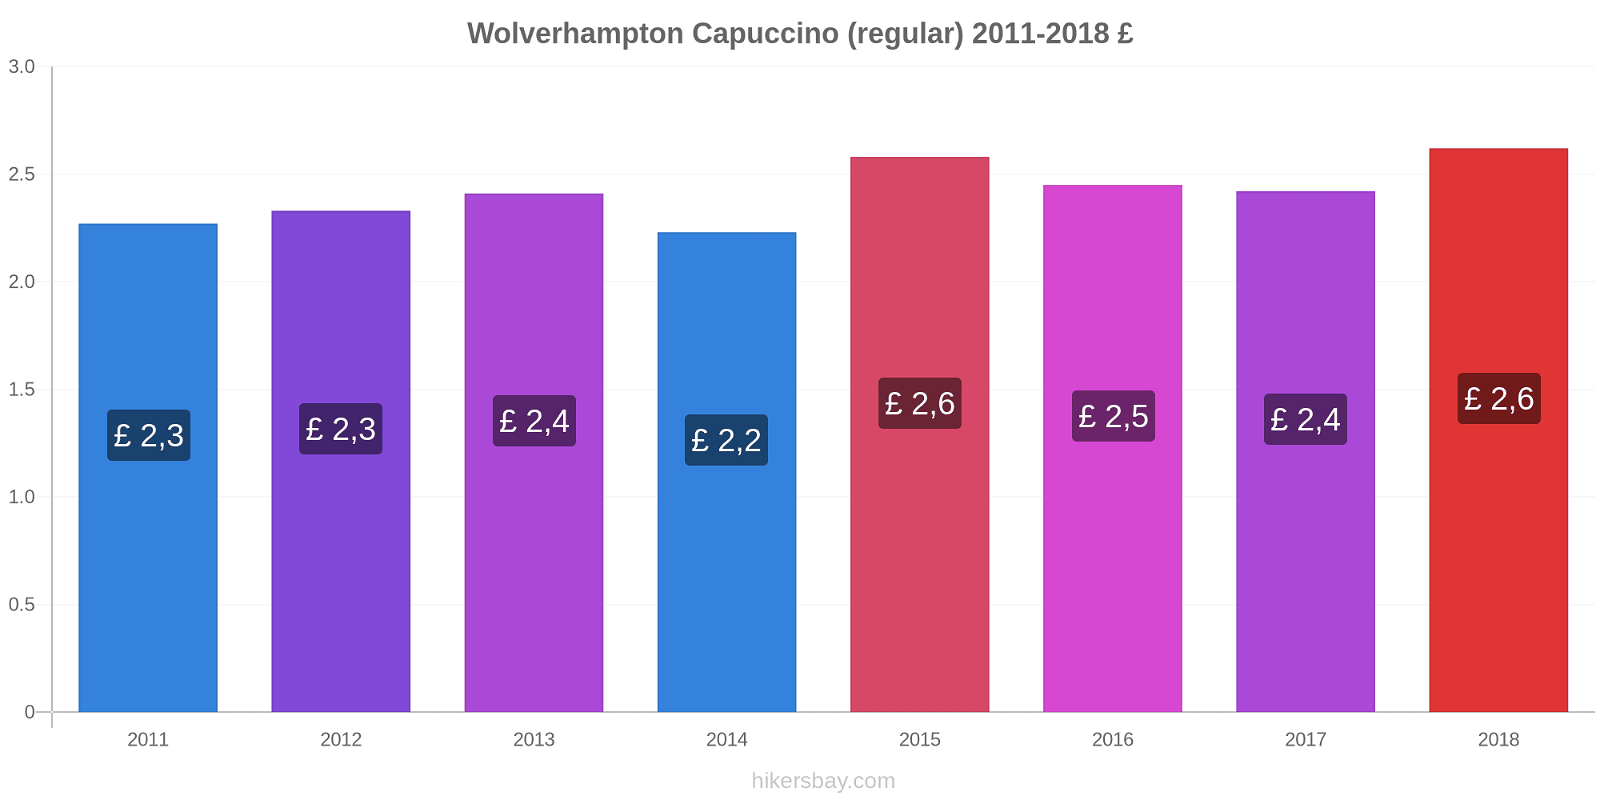 Wolverhampton variação de preço Capuccino (regular) hikersbay.com